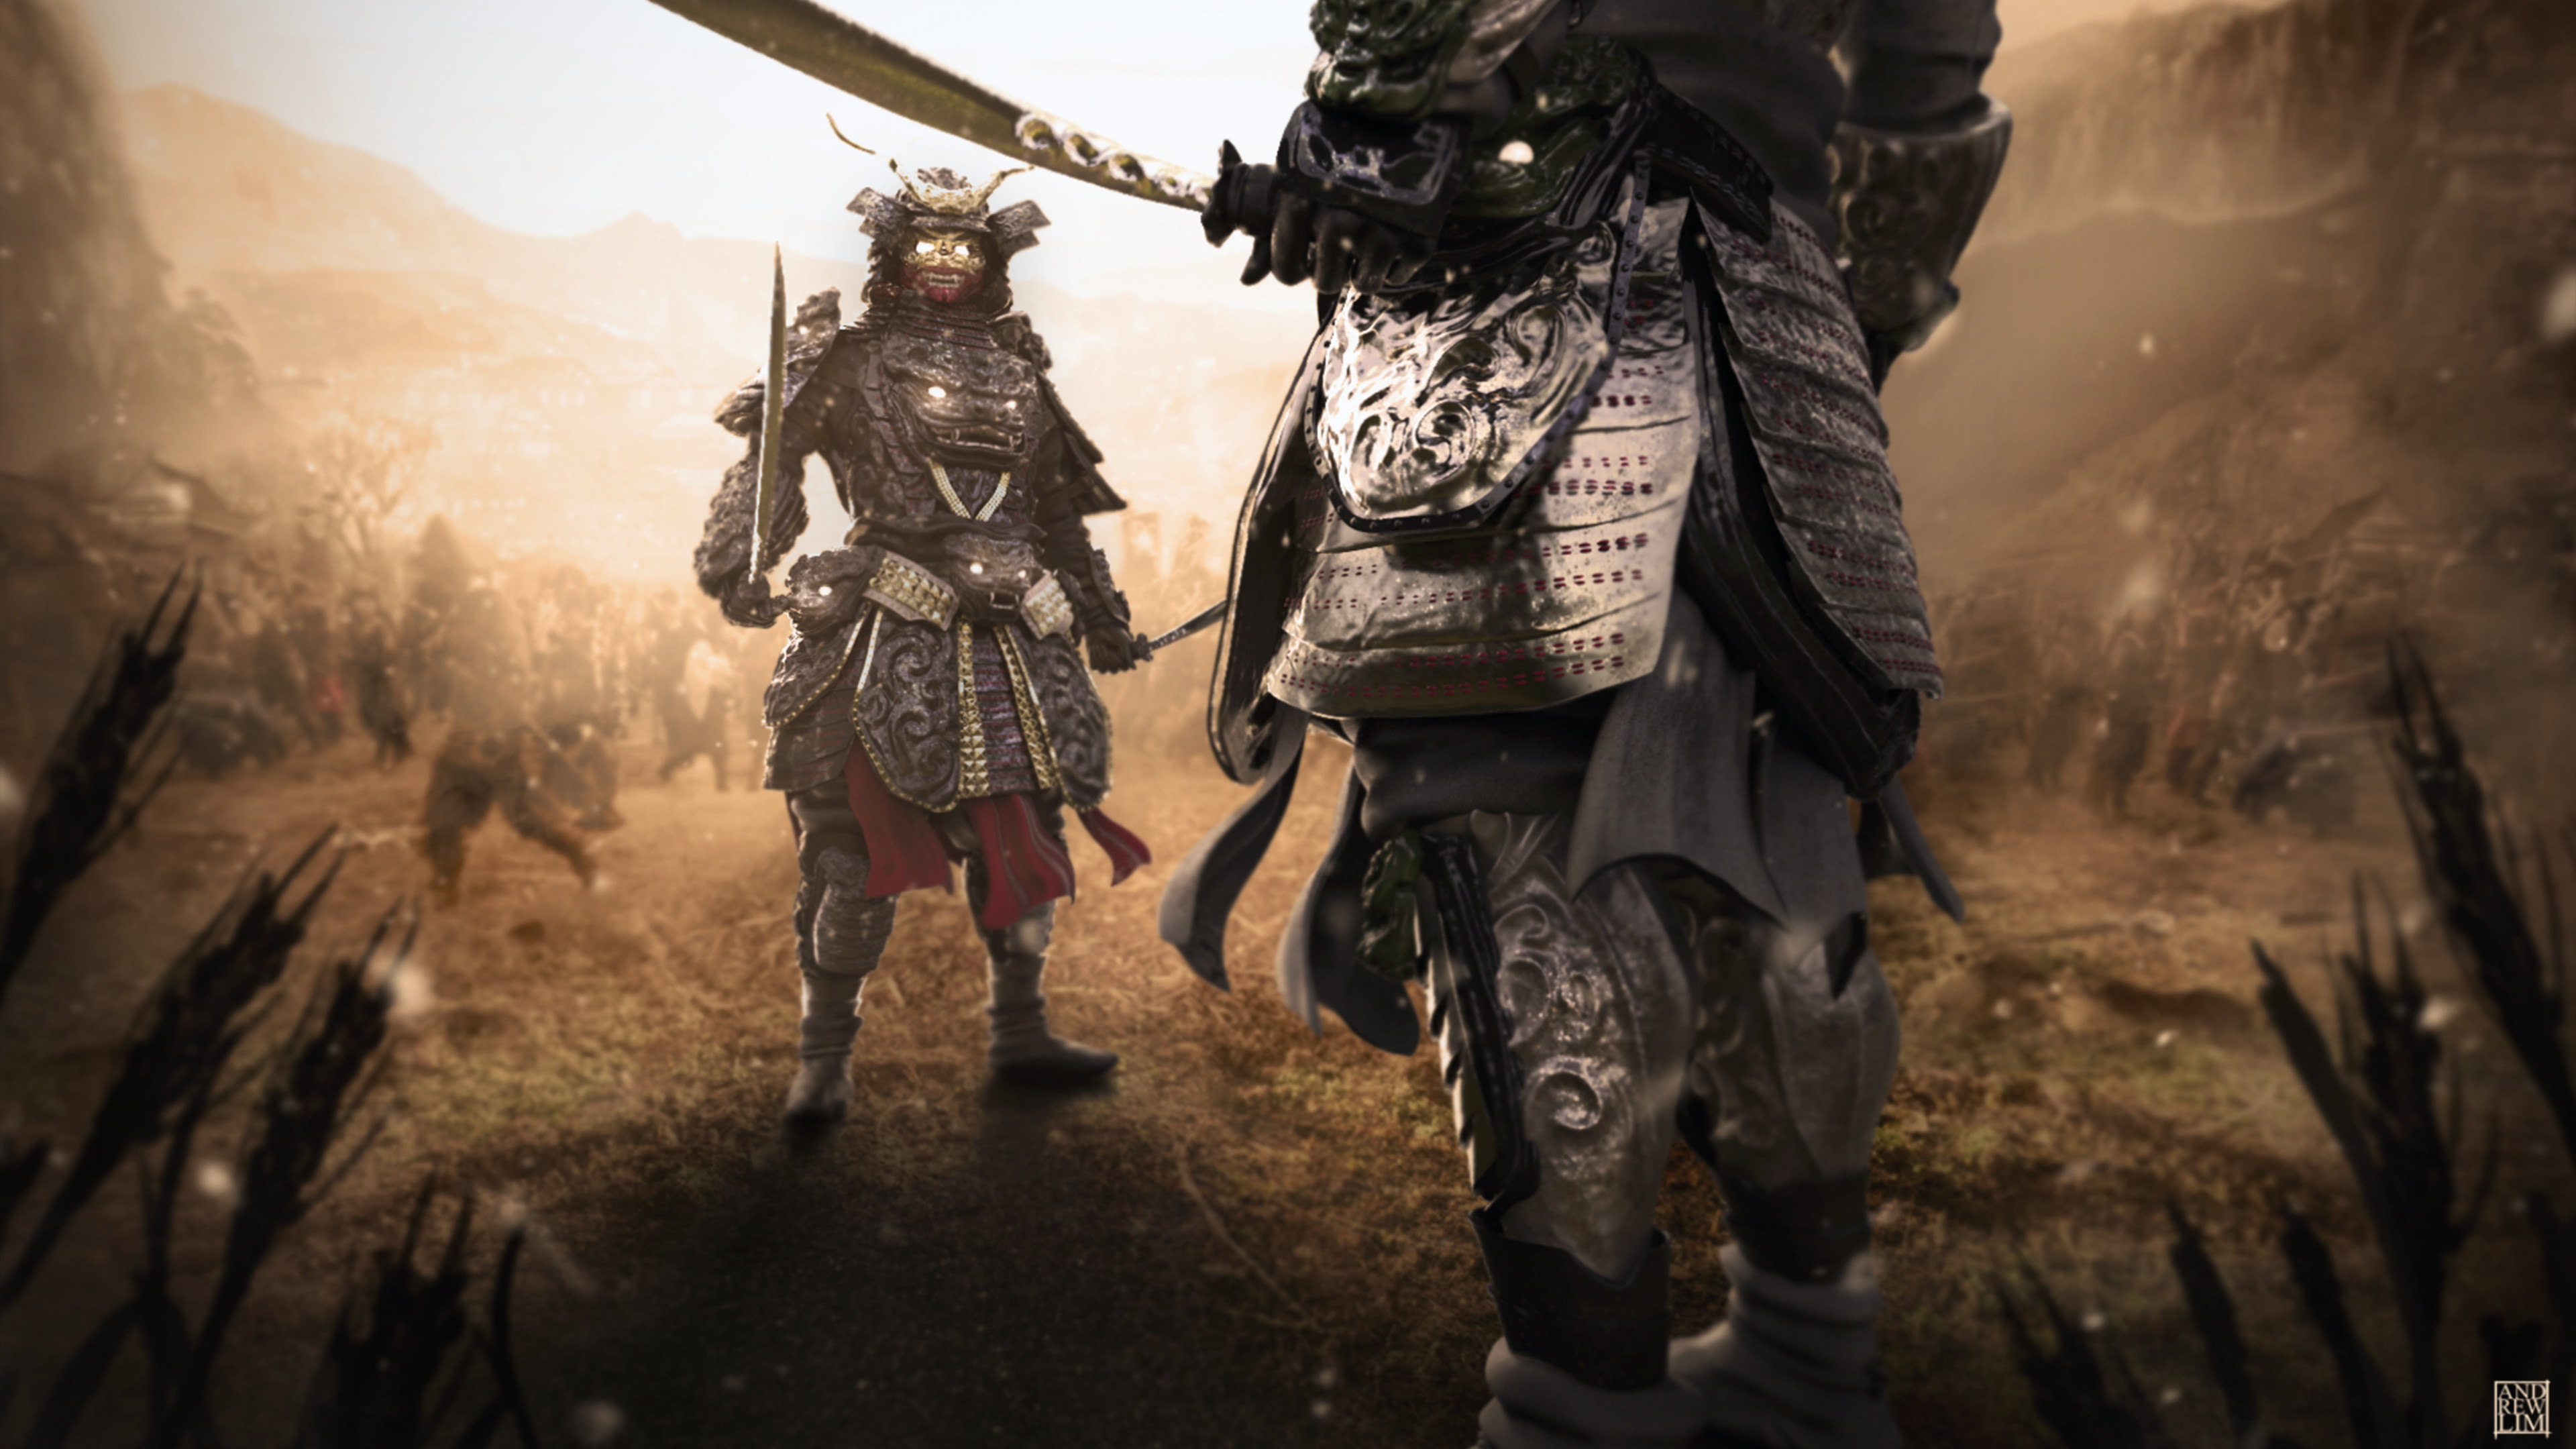 3840x2160 Wallpaper Armor Samurai Warriors 2 Fantasy  armour Two